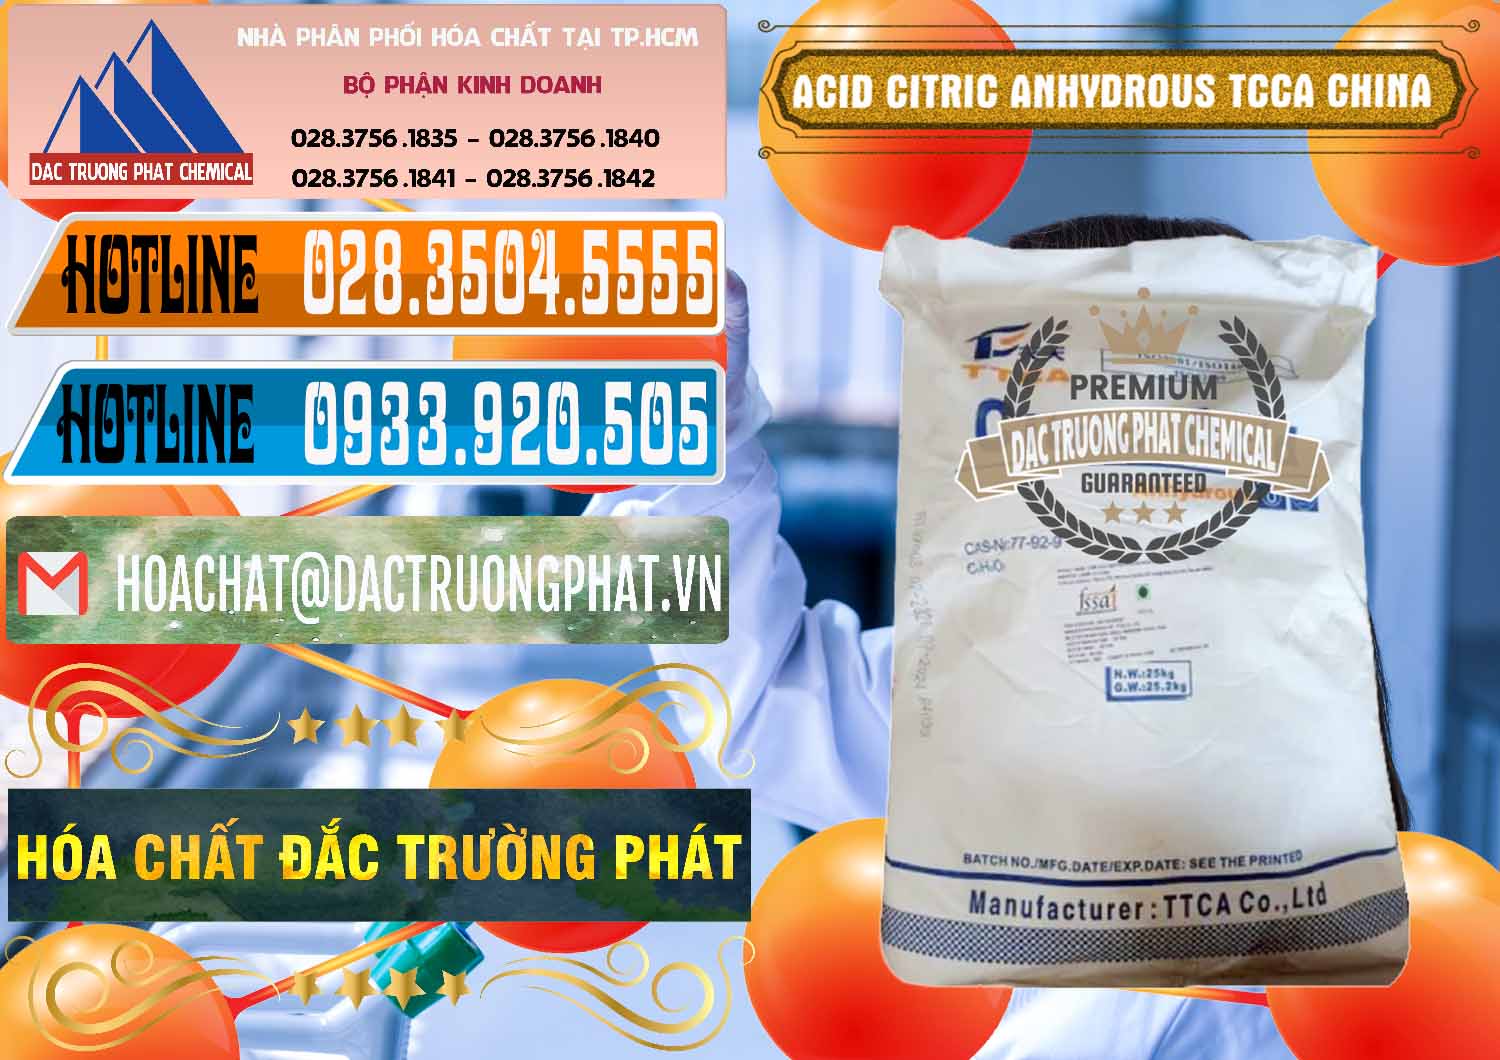 Công ty chuyên kinh doanh - bán Acid Citric - Axit Citric Anhydrous TCCA Trung Quốc China - 0442 - Đơn vị chuyên cung ứng & phân phối hóa chất tại TP.HCM - stmp.net